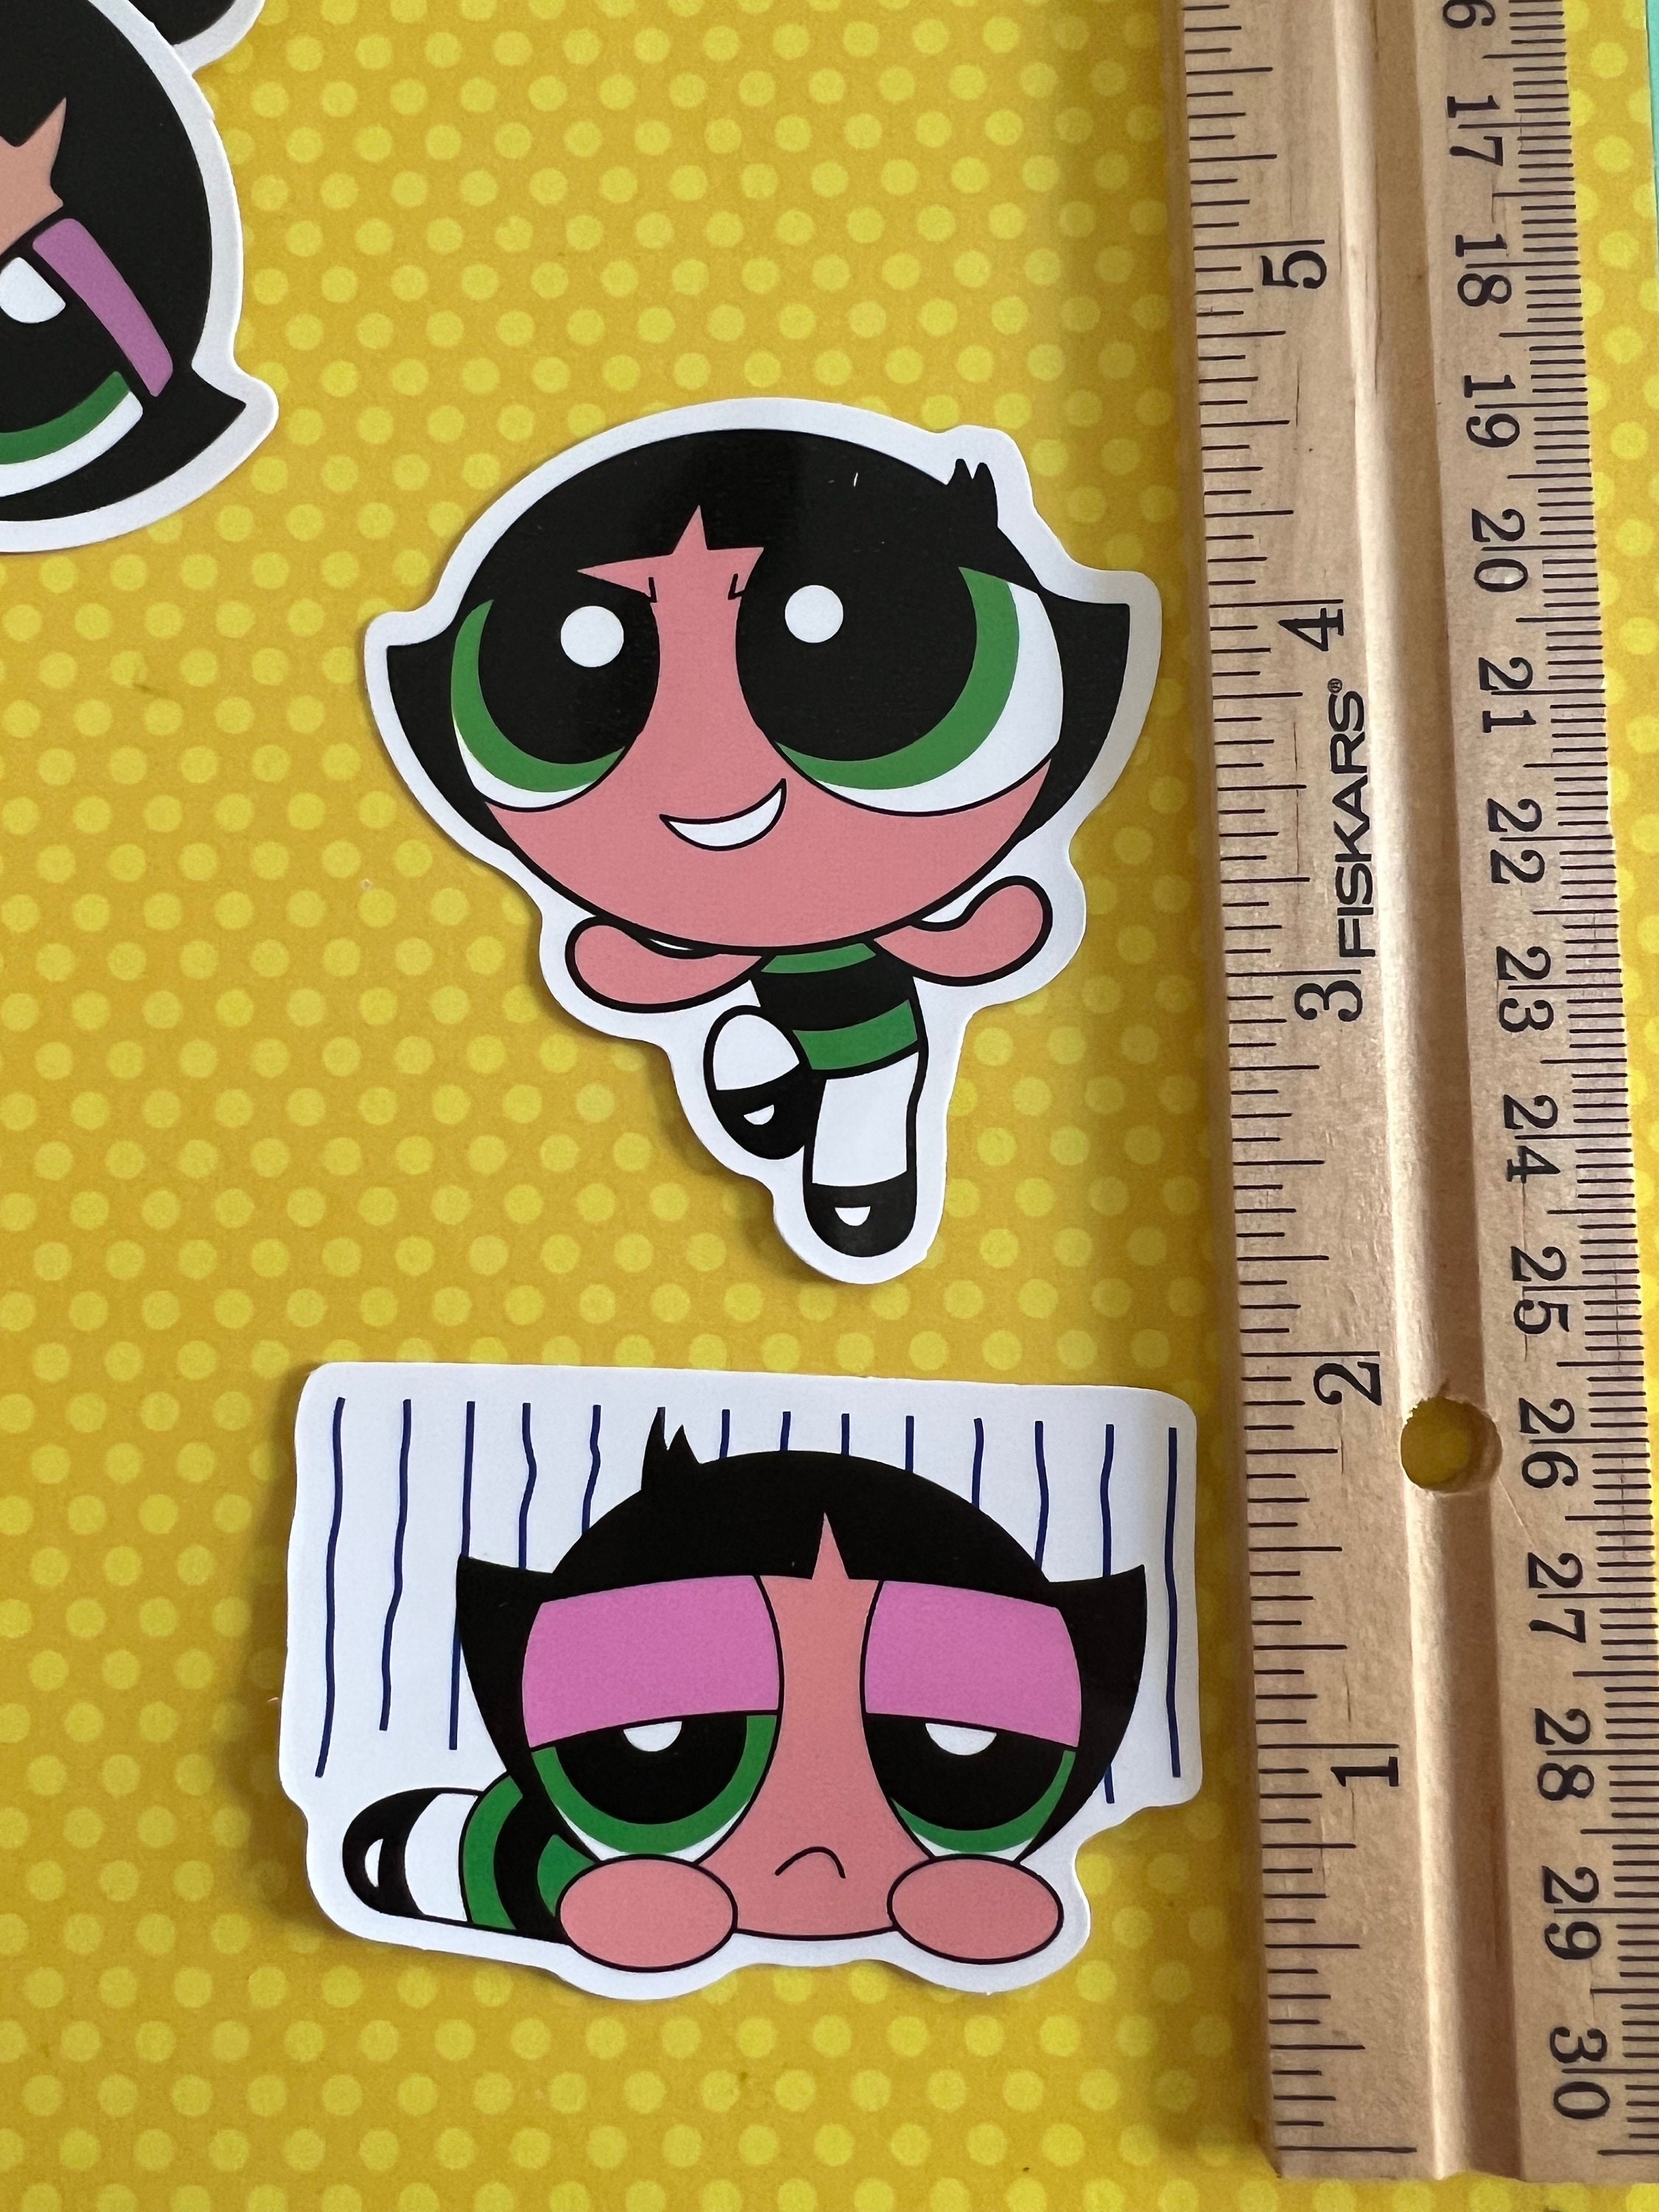 Sticker - Buttercup Powerpuff Girls Cartoon Network Kids TV Show 4.5 Decal  5914